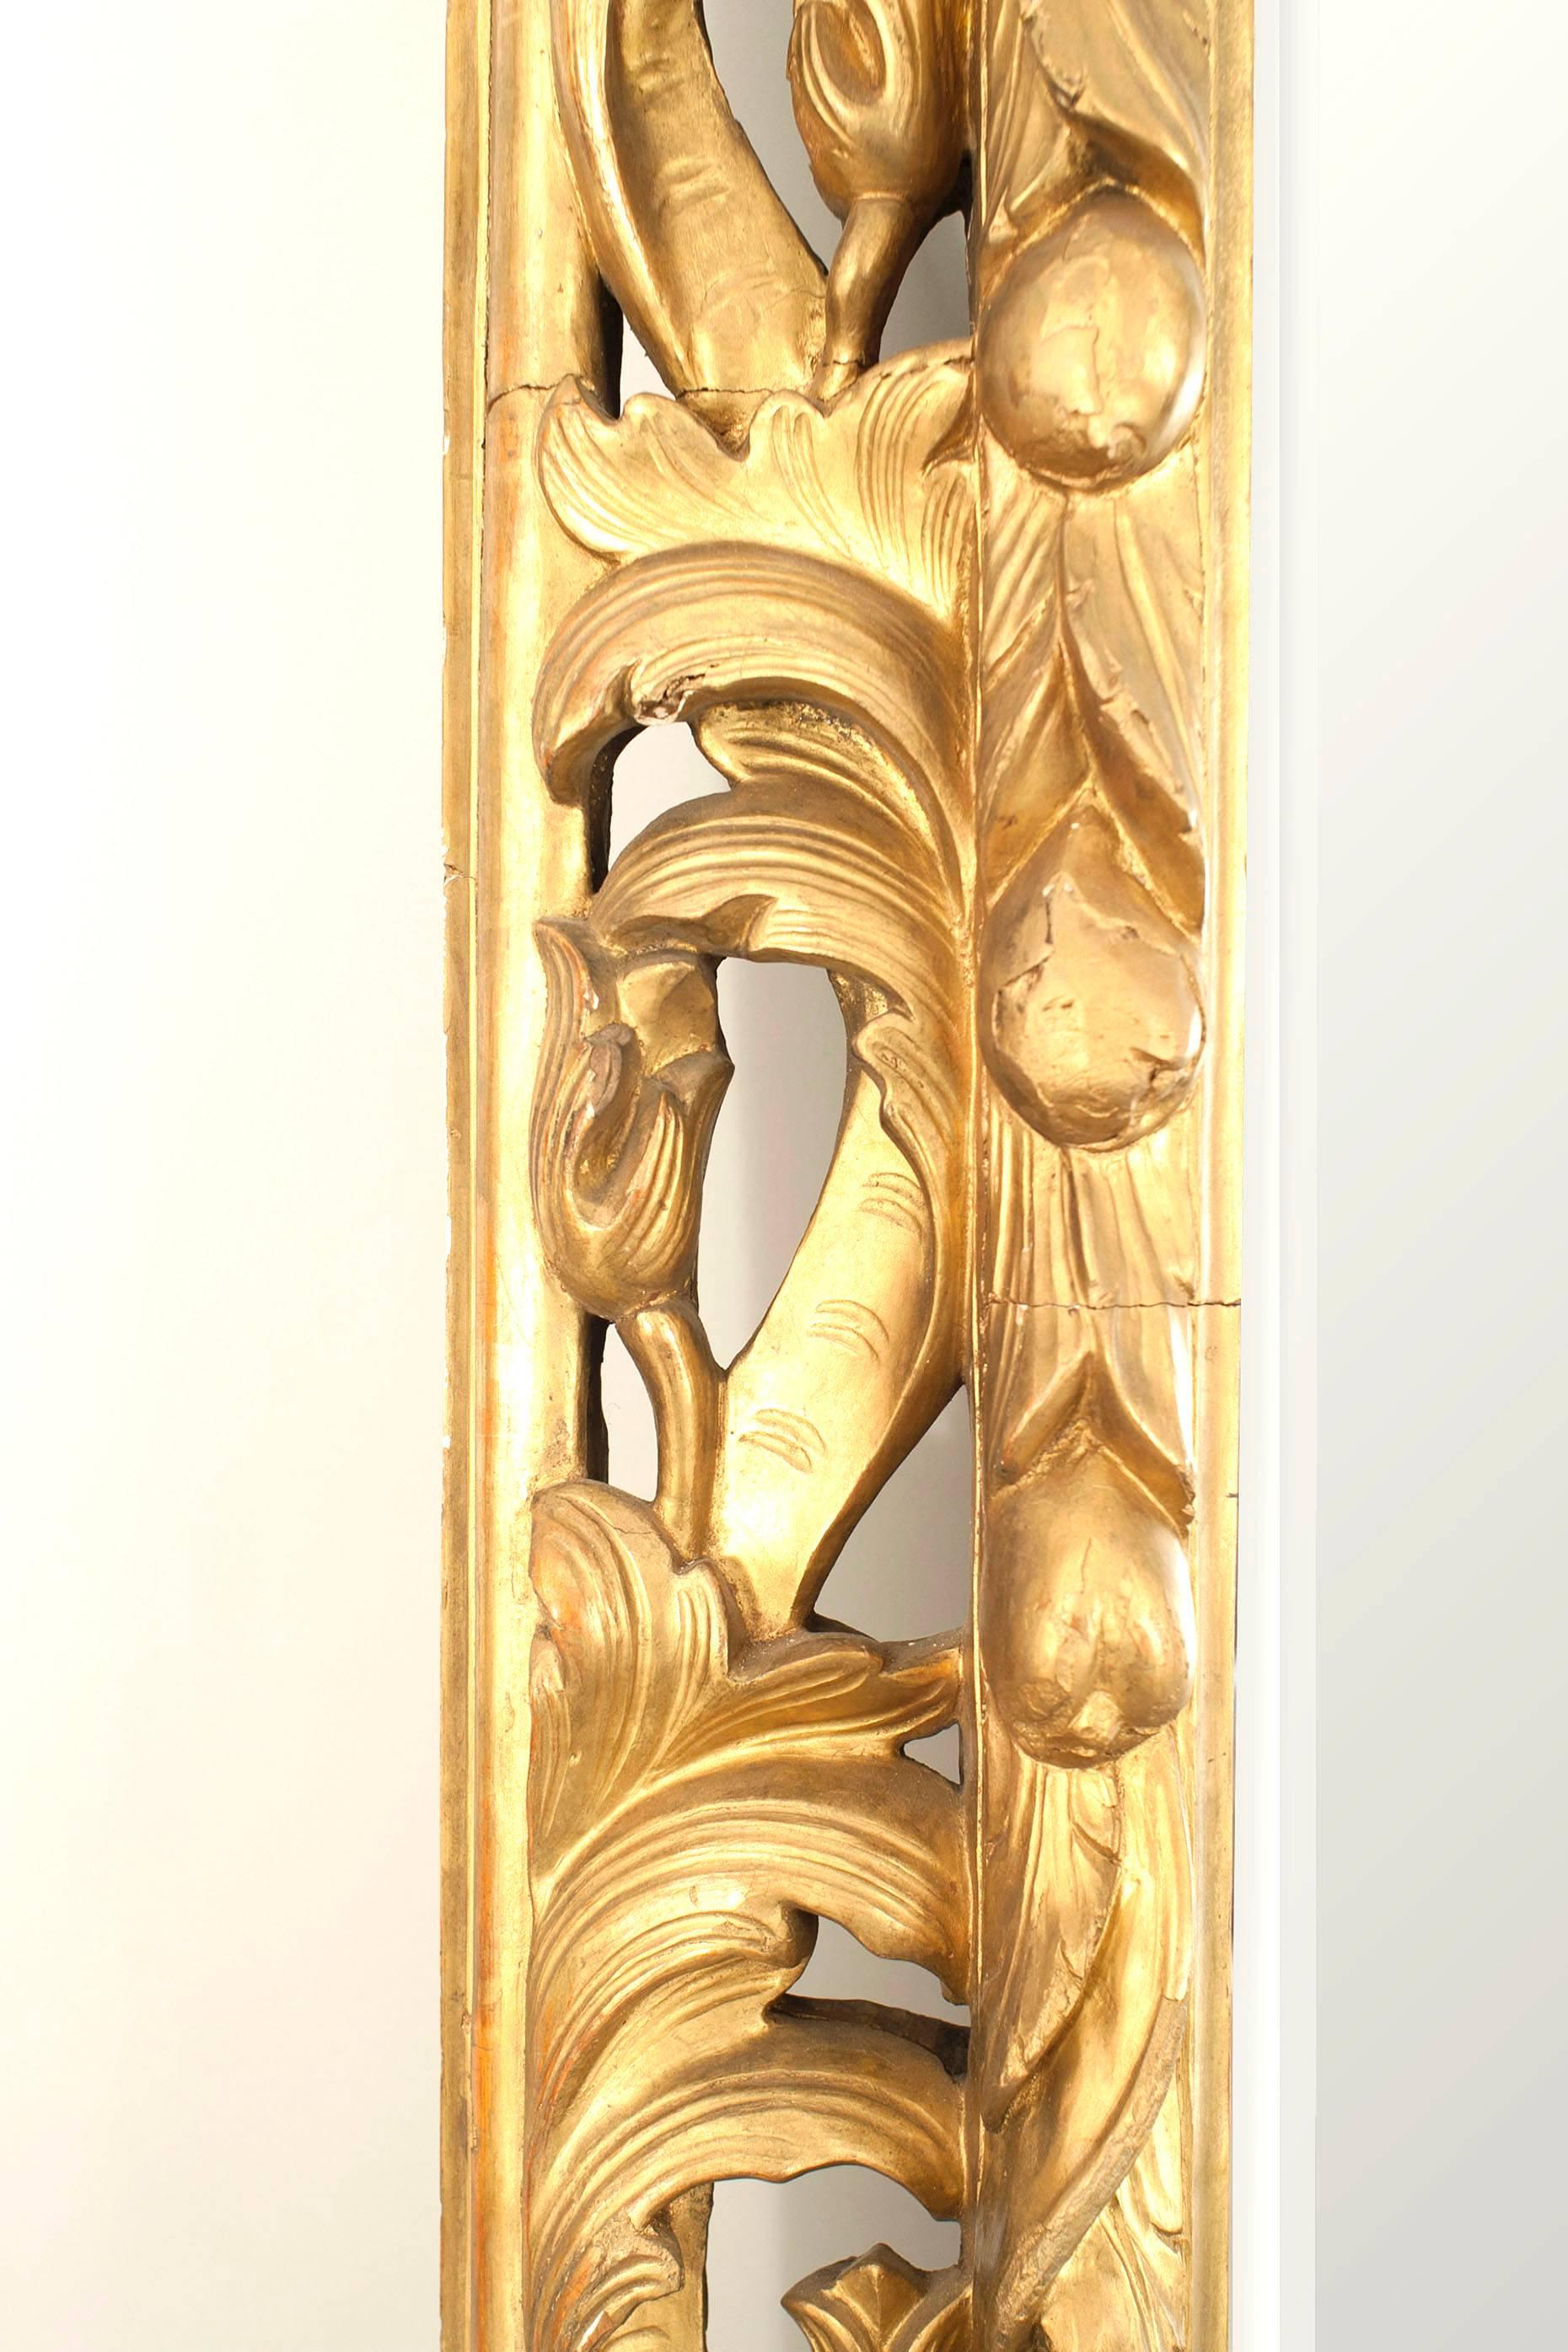 Miroir mural de style Louis XV (19e siècle) en bois doré sculpté, à décor de feuilles d'acanthe et de boutons floraux et miroir biseauté. (étiquettes en métal au dos estampillées CHENUE)
